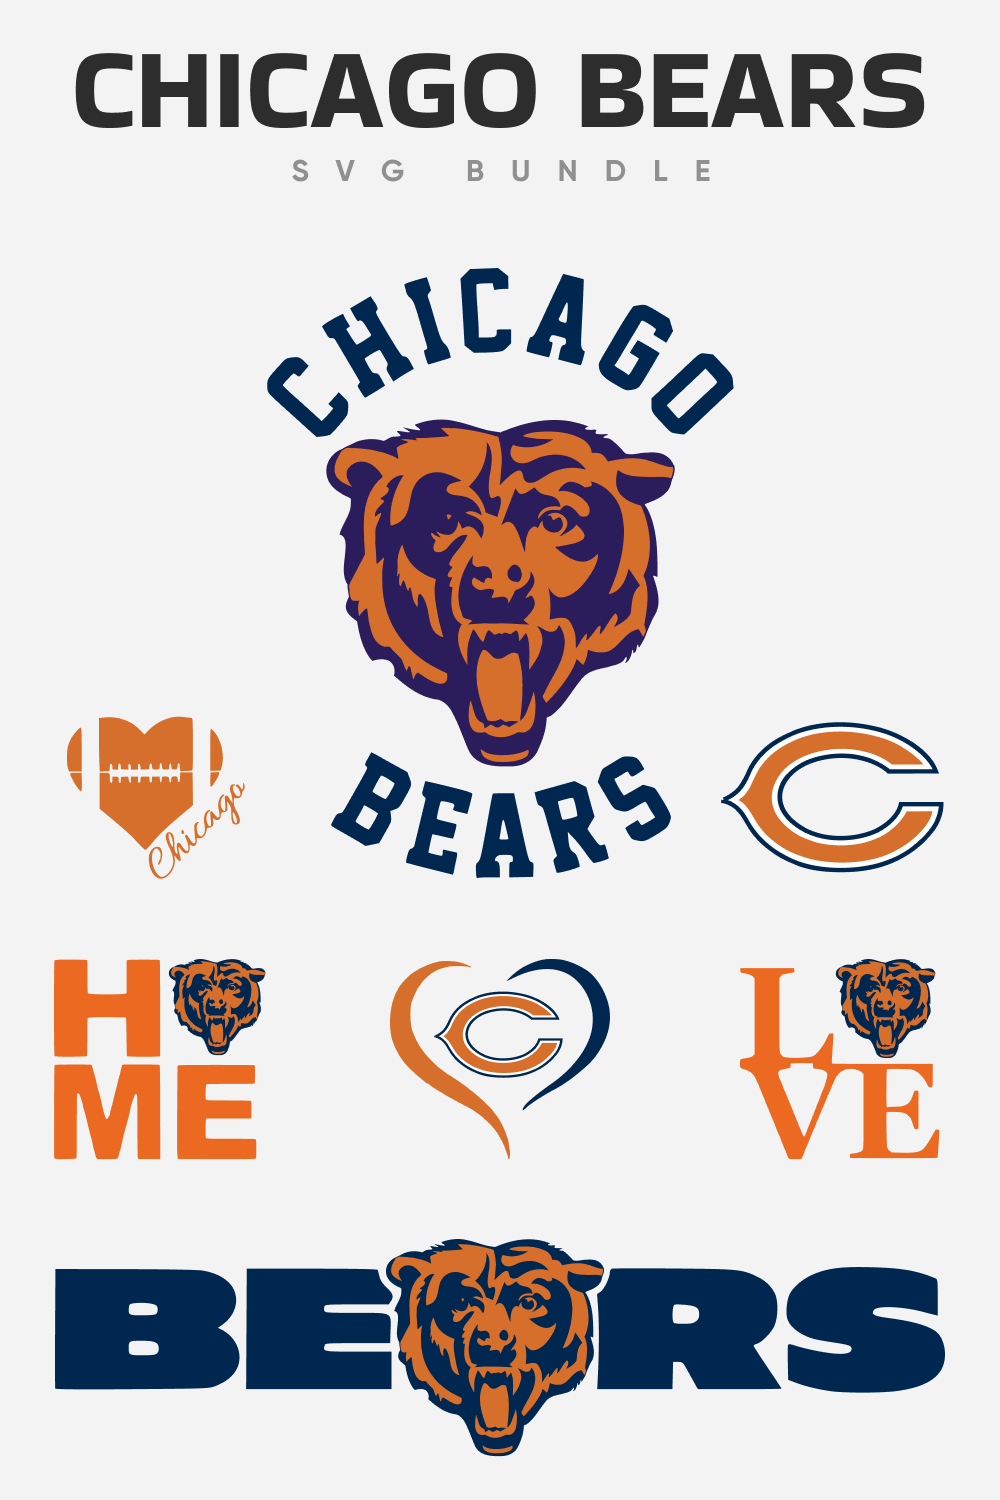 Chicago bears SVG bundle.